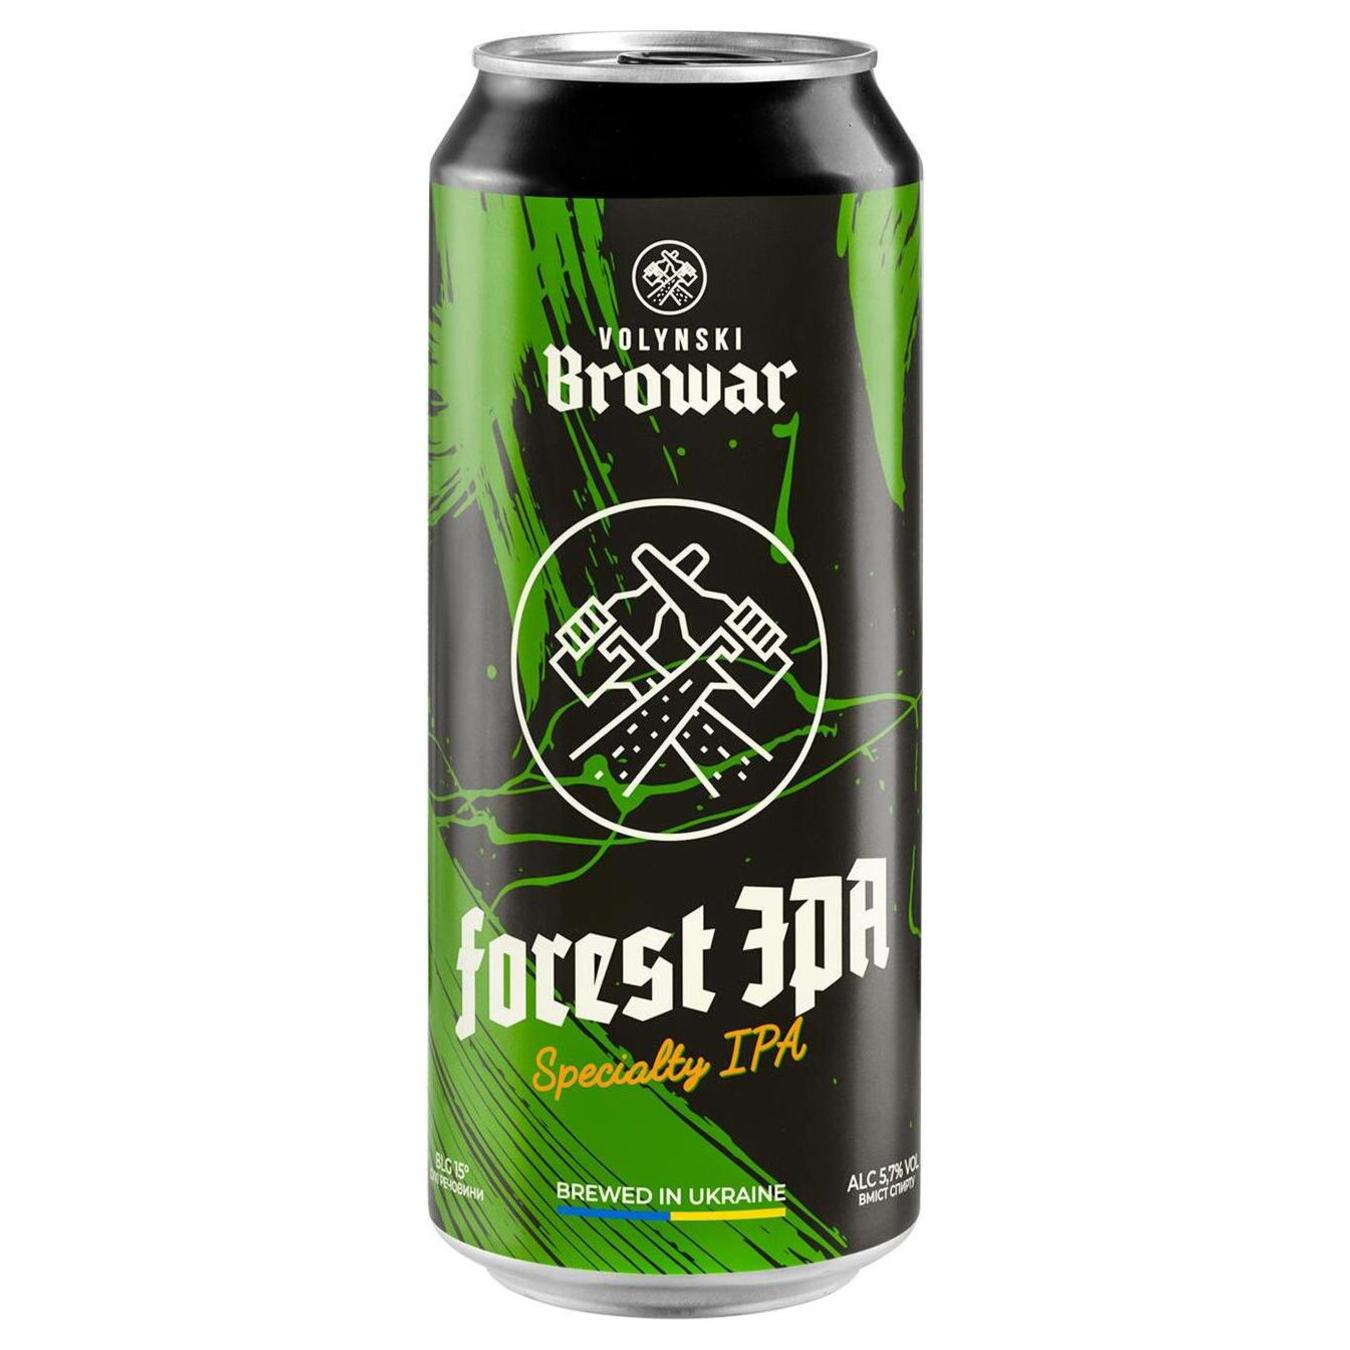 Пиво Волынский Бровар Forest Ipa светлое нефильтрованное 5,7% 0,5л